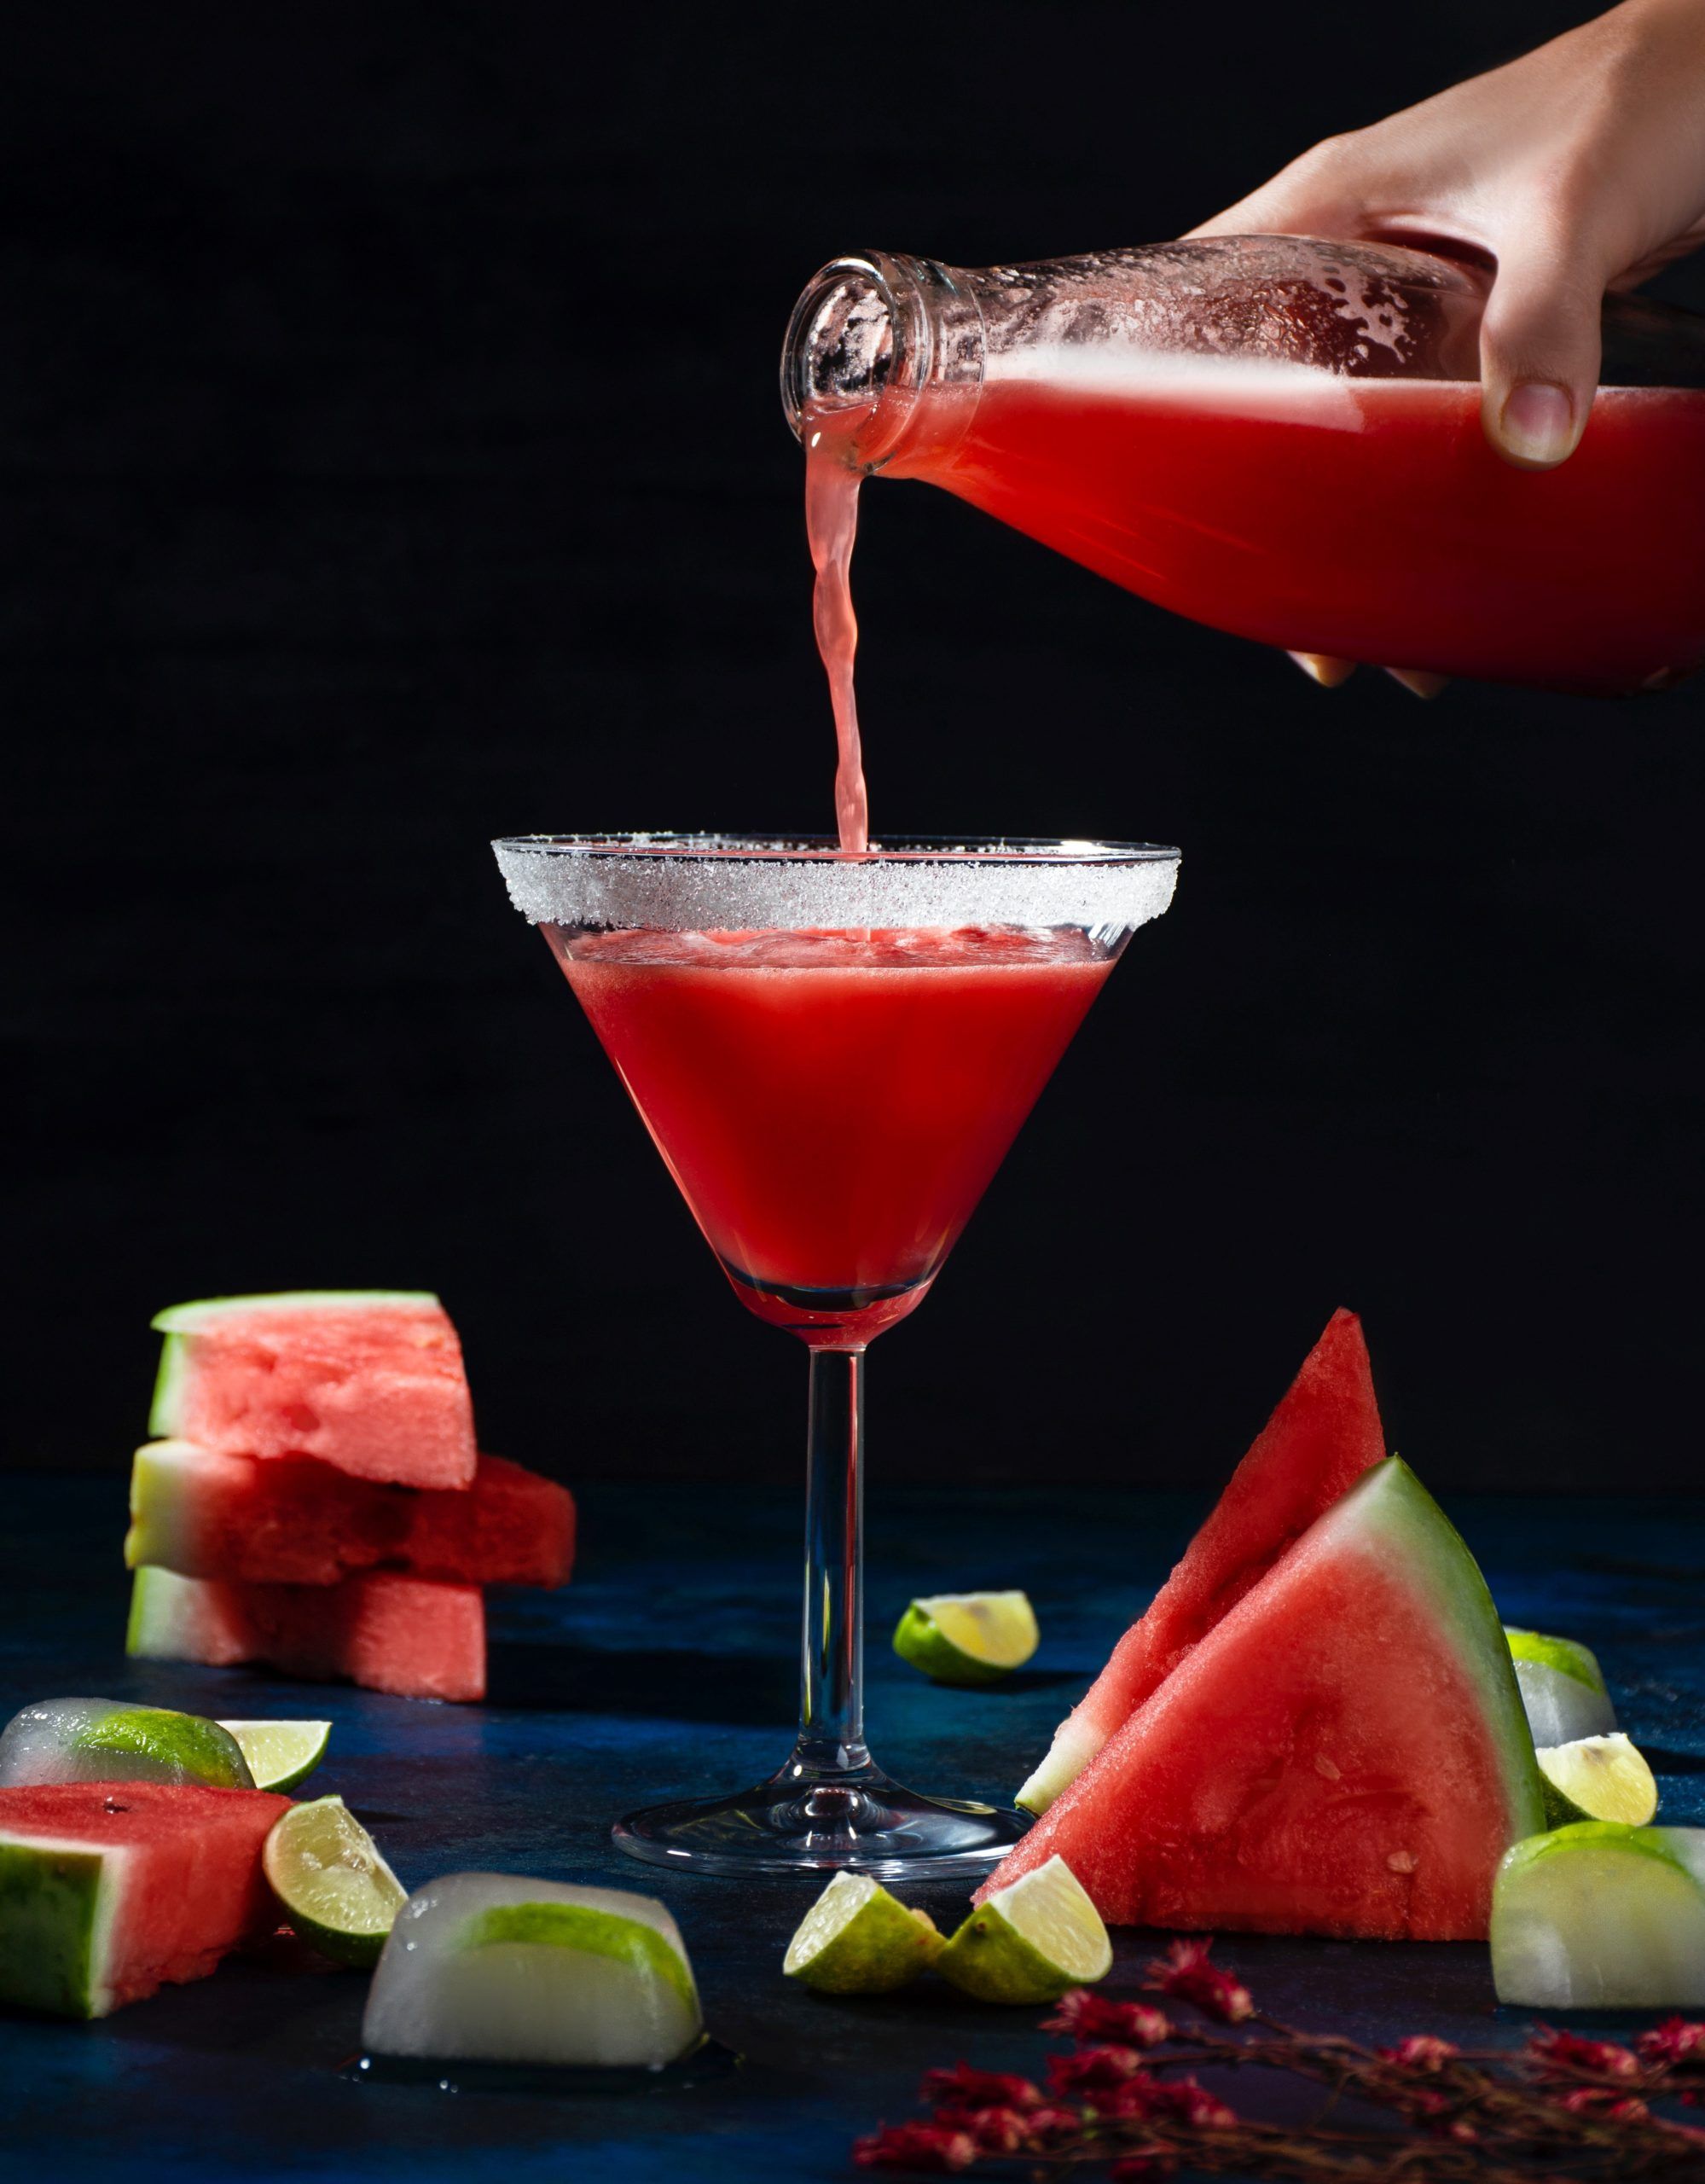 Watermelon cocktails